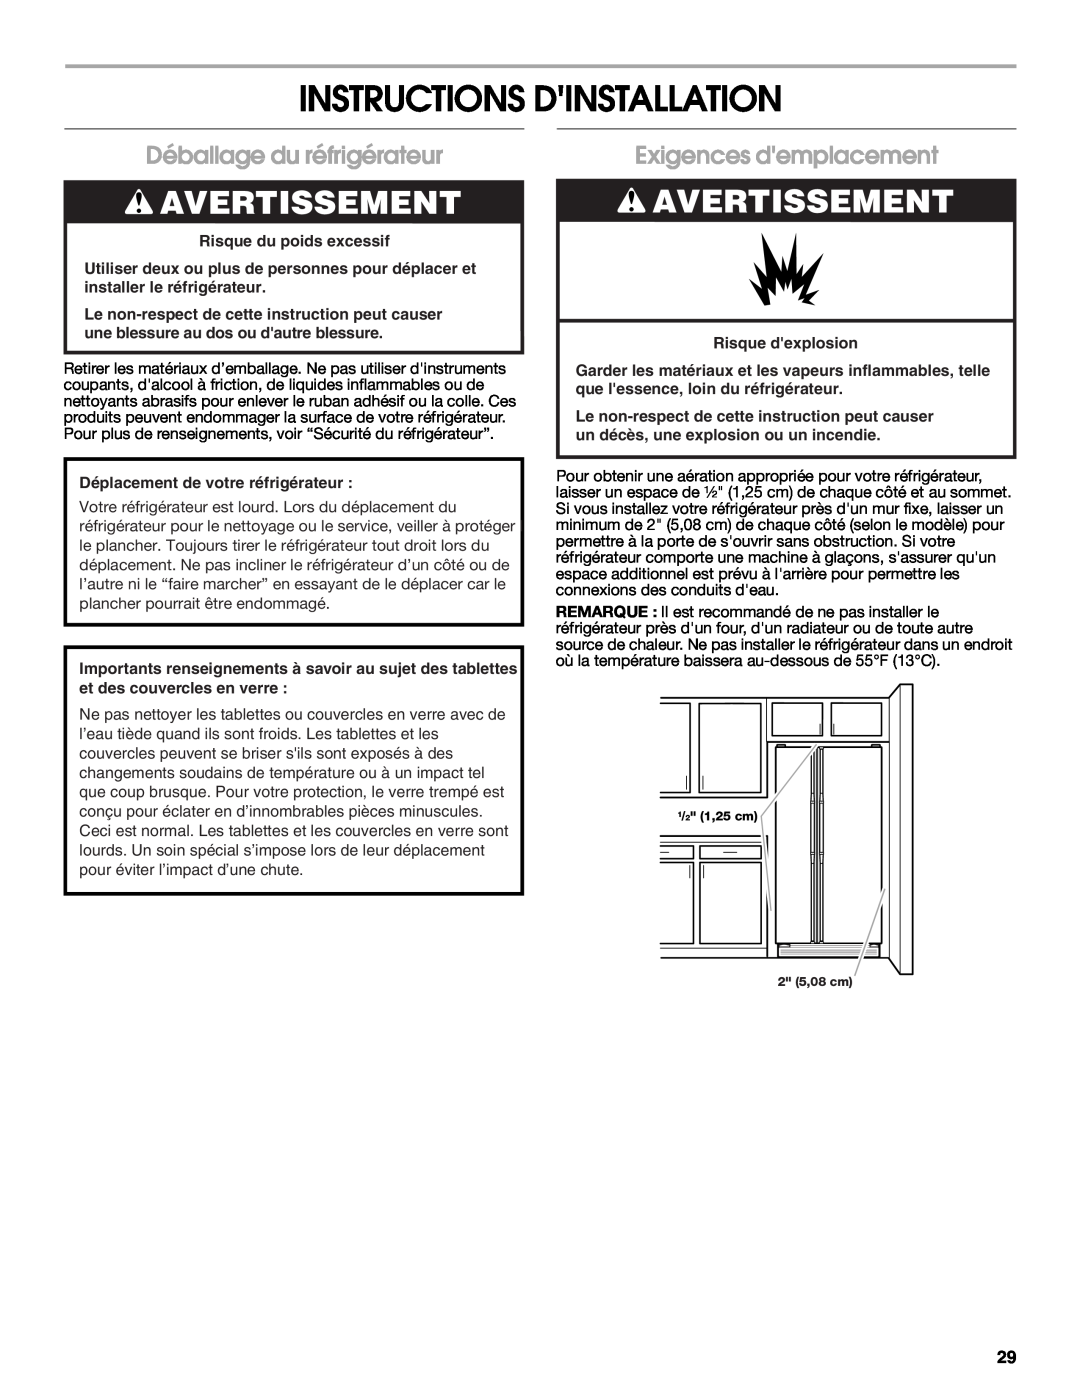 Crosley CS25AFXKT05 Instructions Dinstallation, Déballage du réfrigérateur, Exigences demplacement, Risque dexplosion 